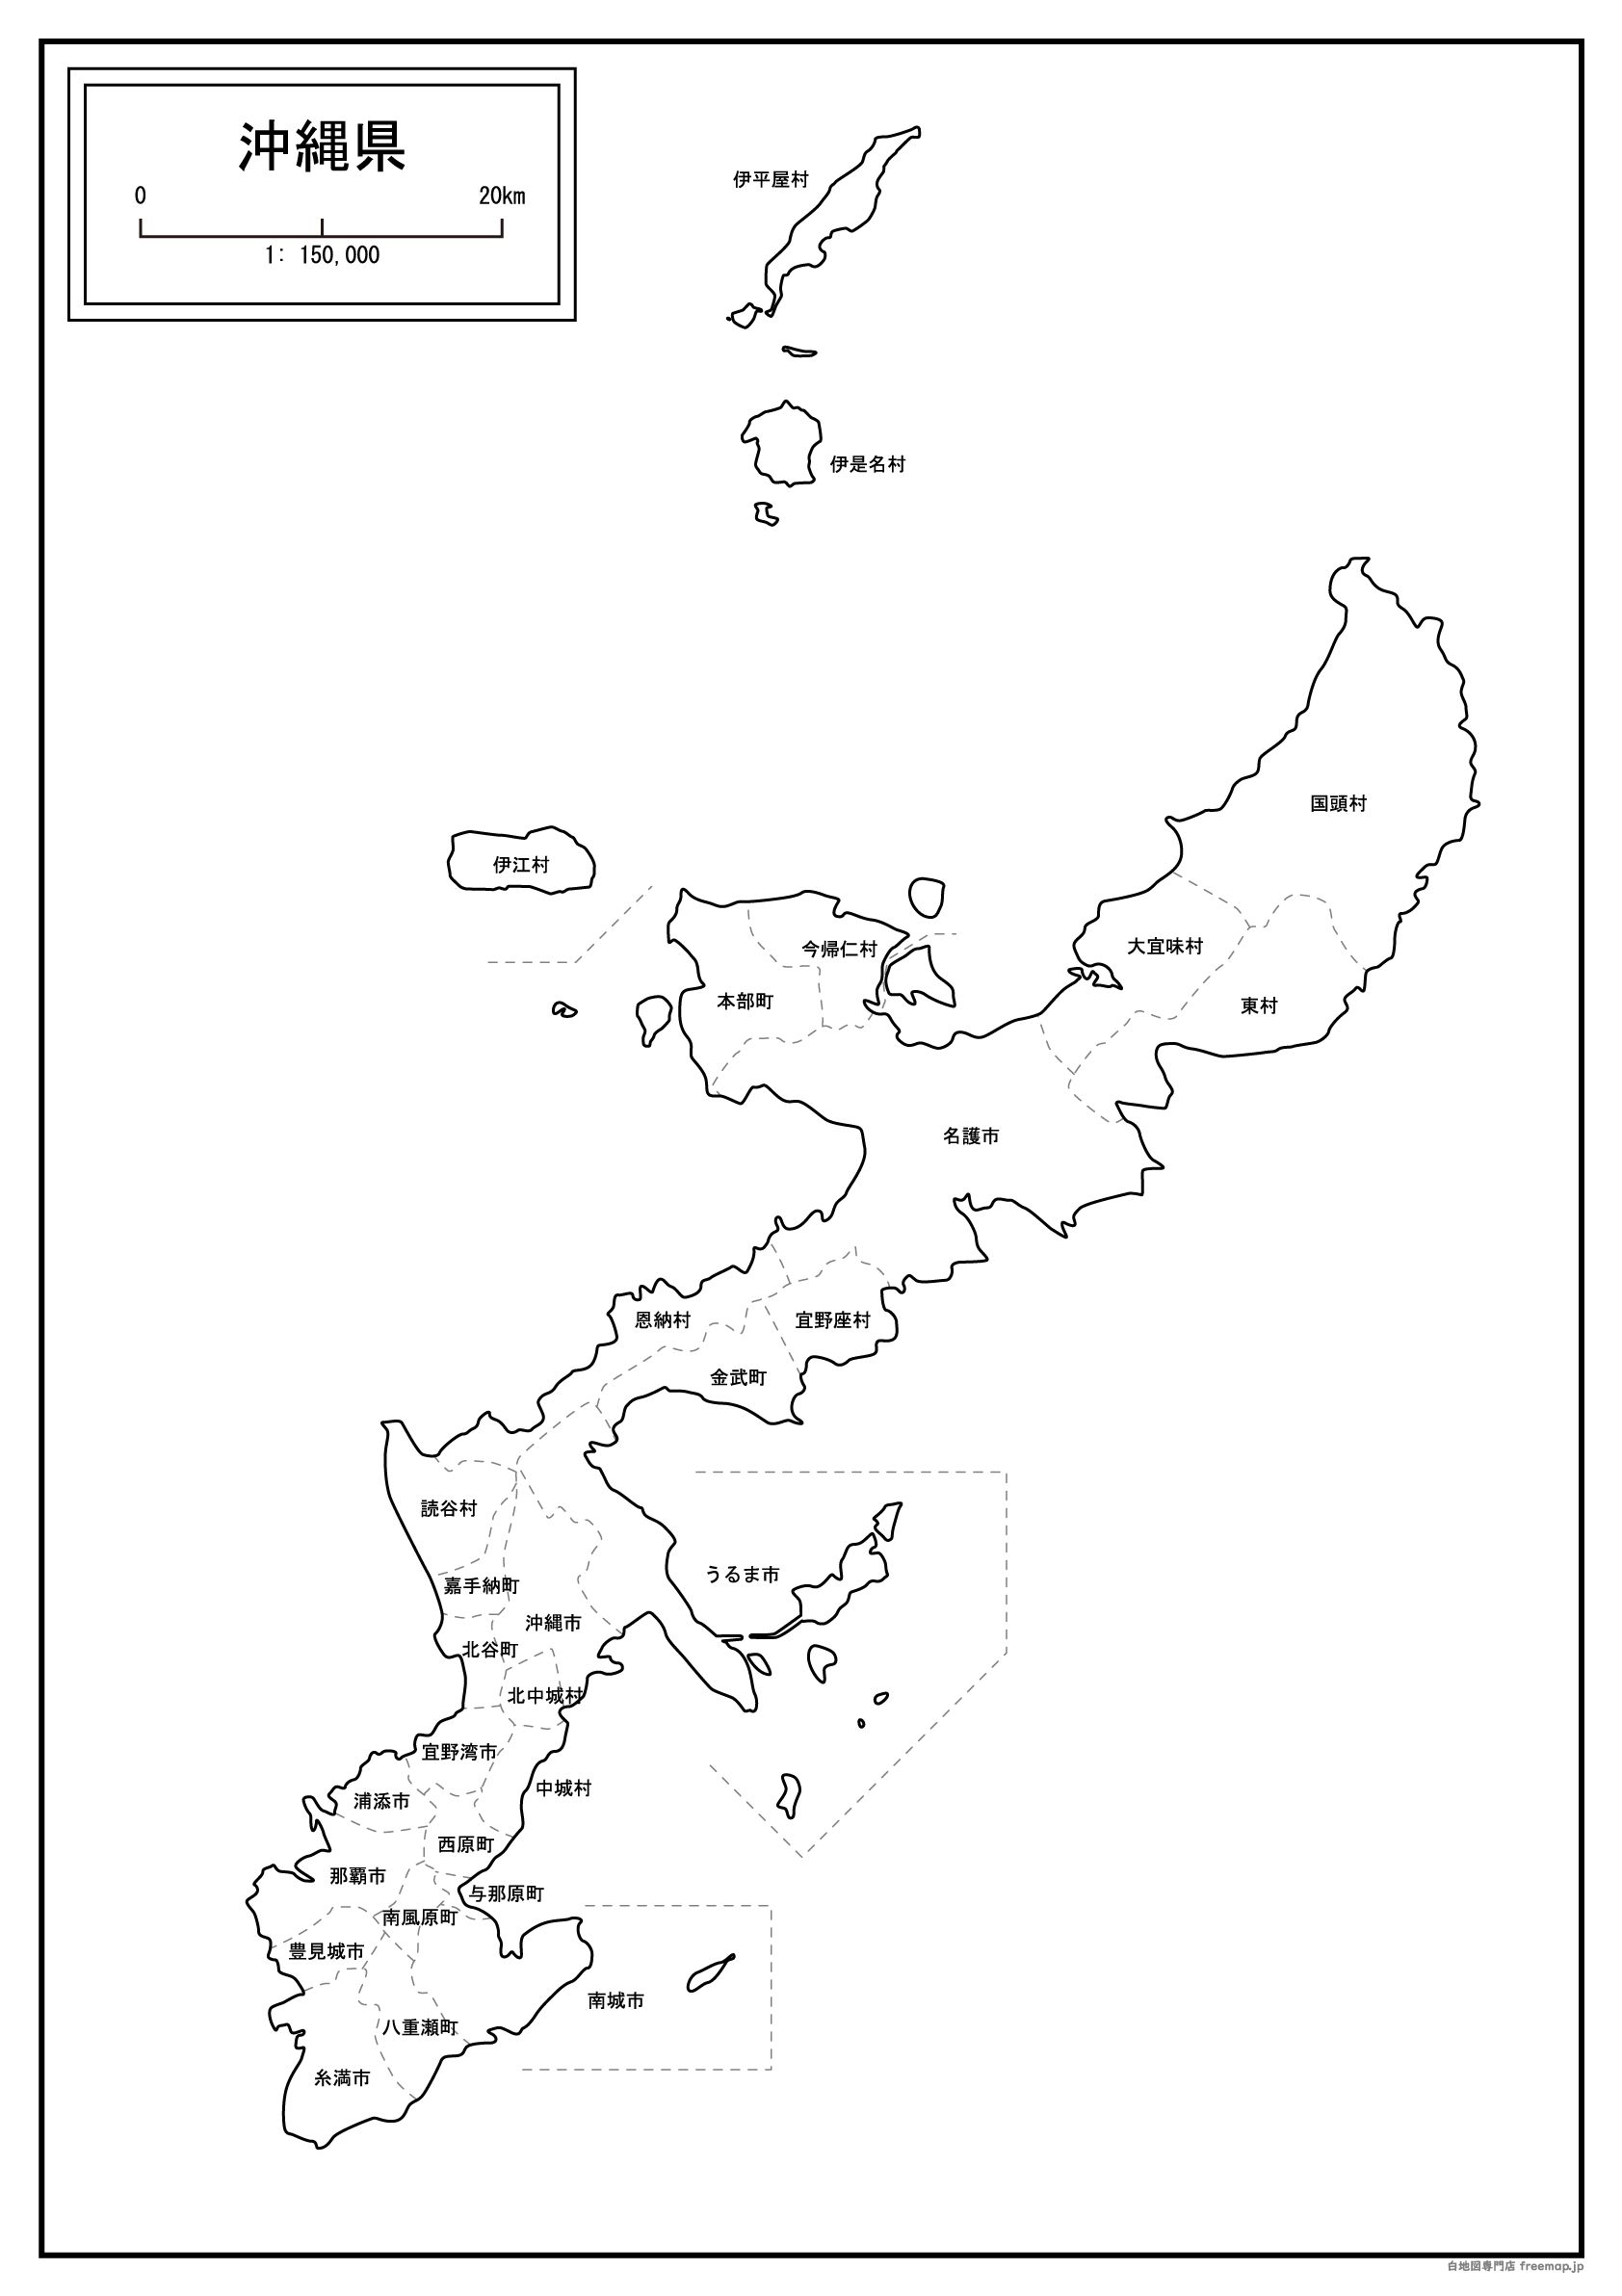 沖縄県本島周辺図のサムネイル